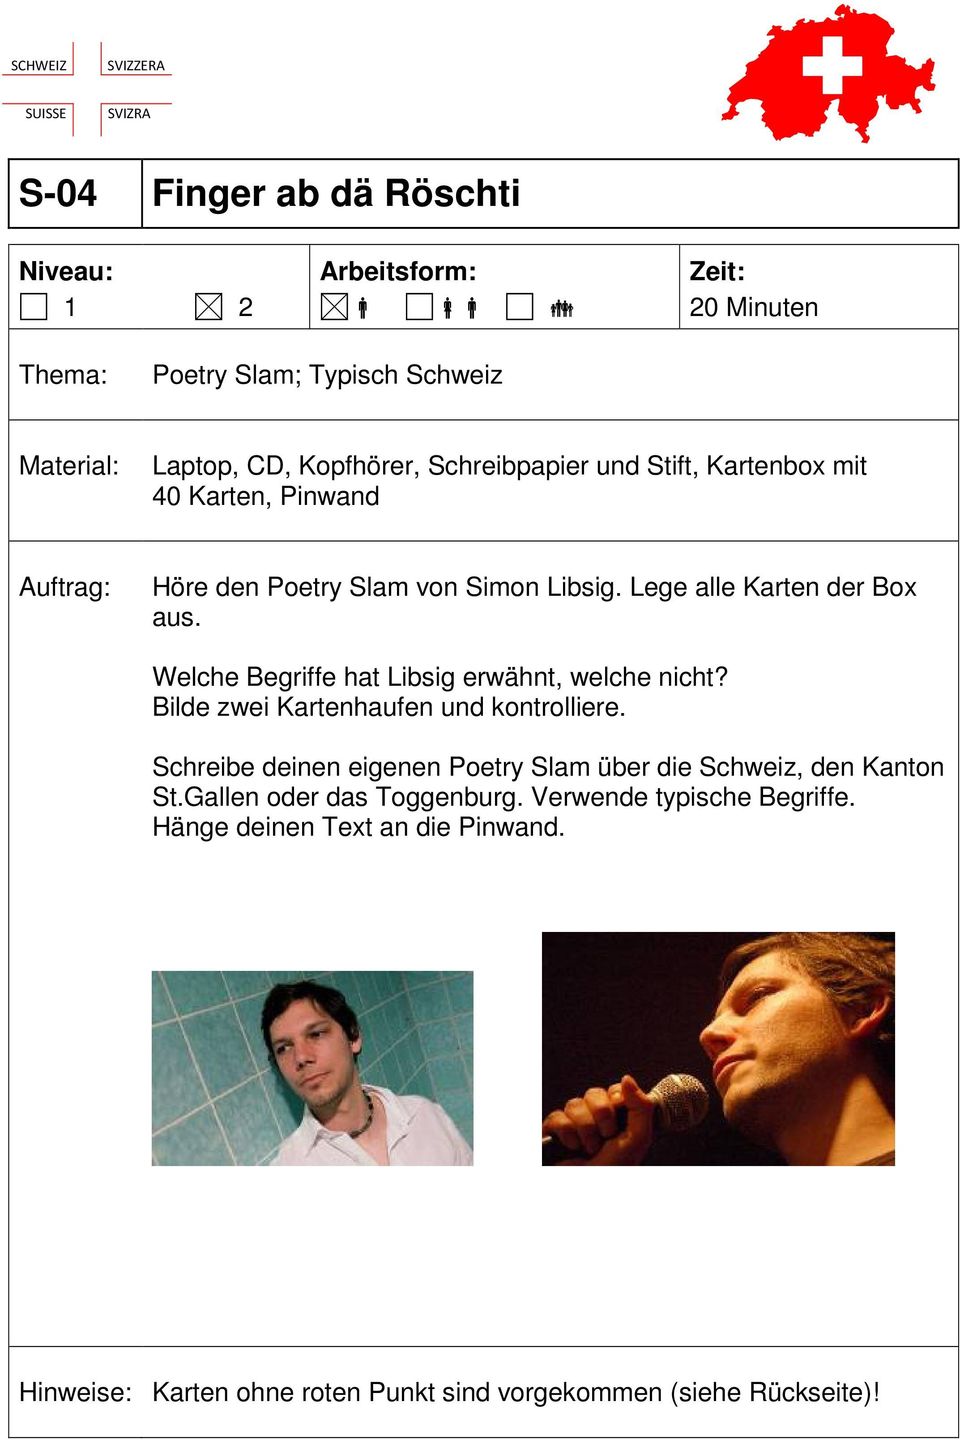 Bilde zwei Kartenhaufen und kontrolliere. Schreibe deinen eigenen Poetry Slam über die Schweiz, den Kanton St.